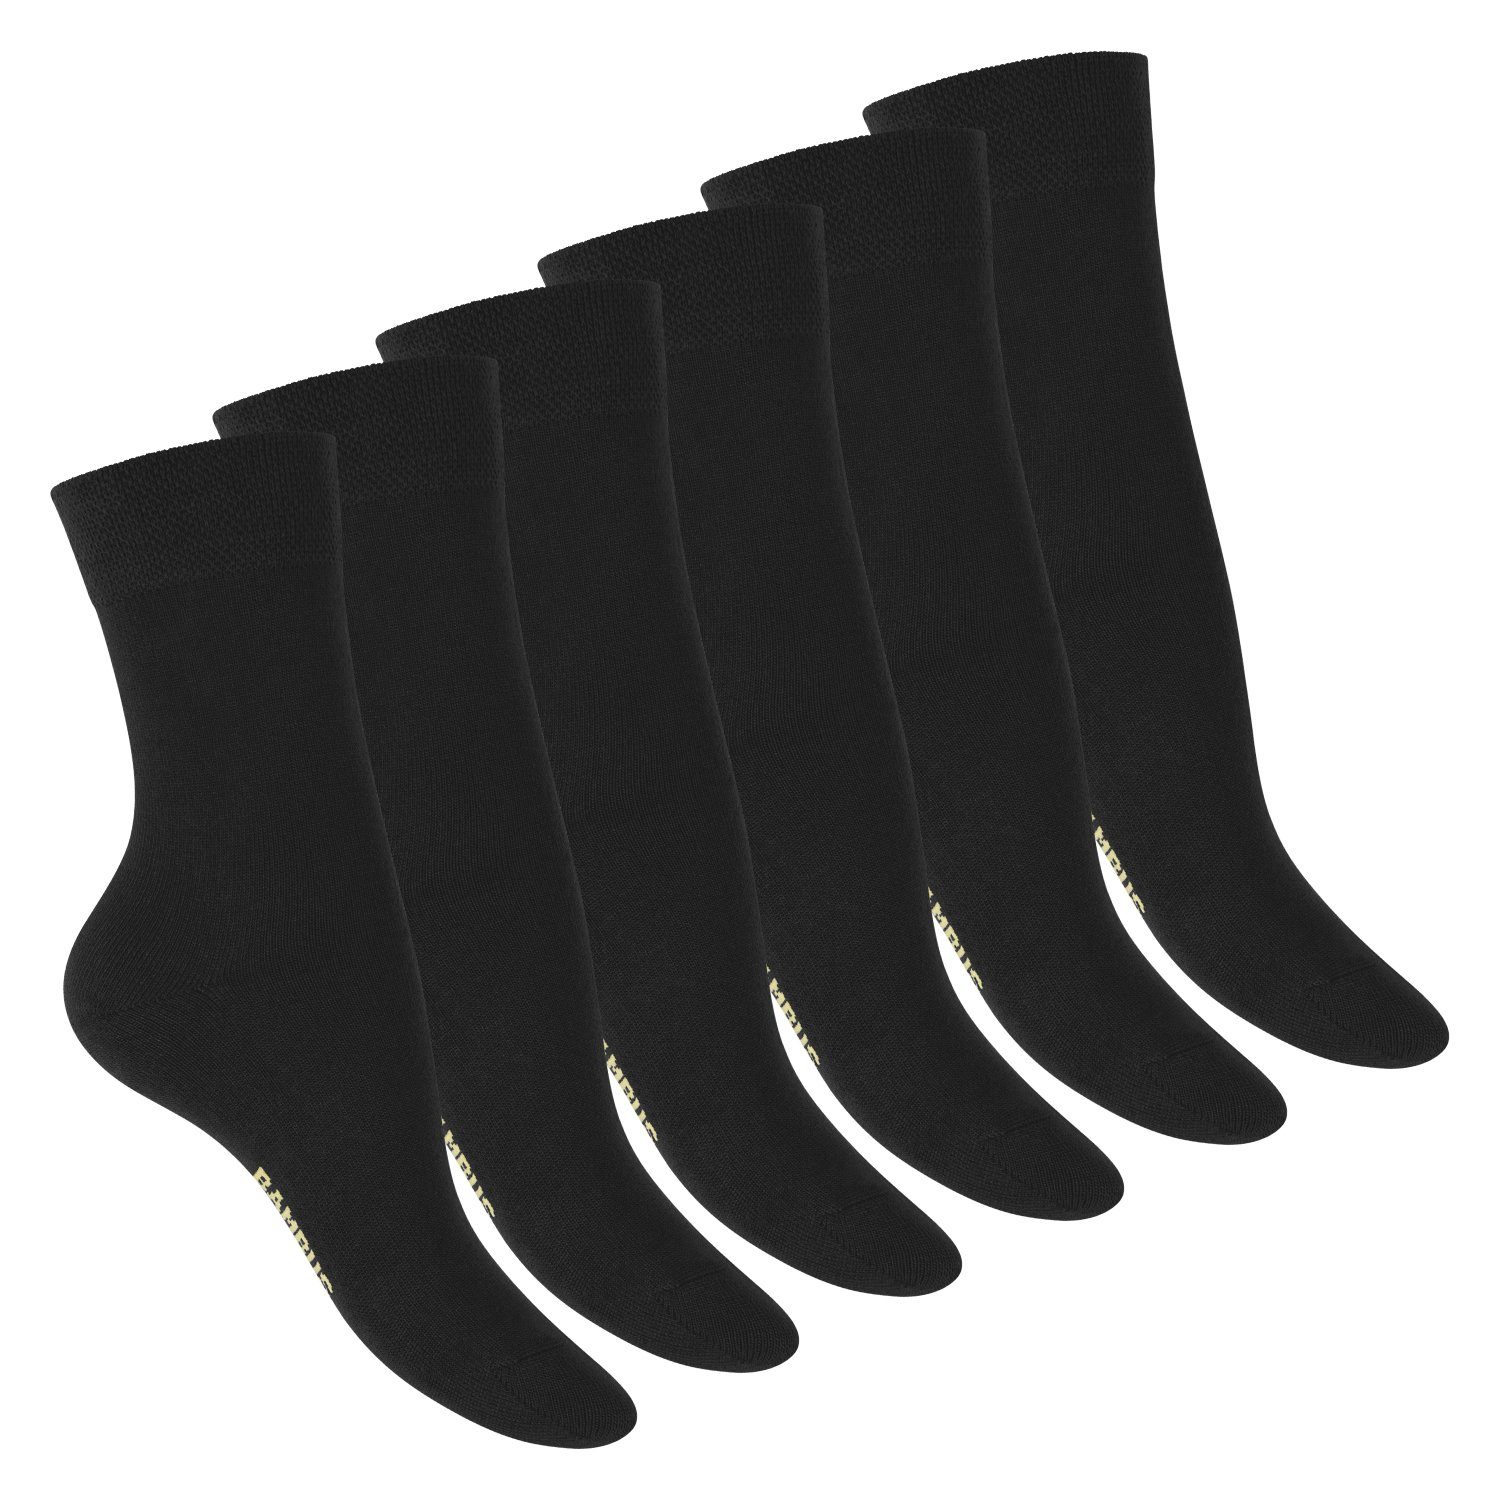 Basicsocken Footstar Socken (6 nachhaltiger Paar), Bambus Viskose Schwarz Damen aus